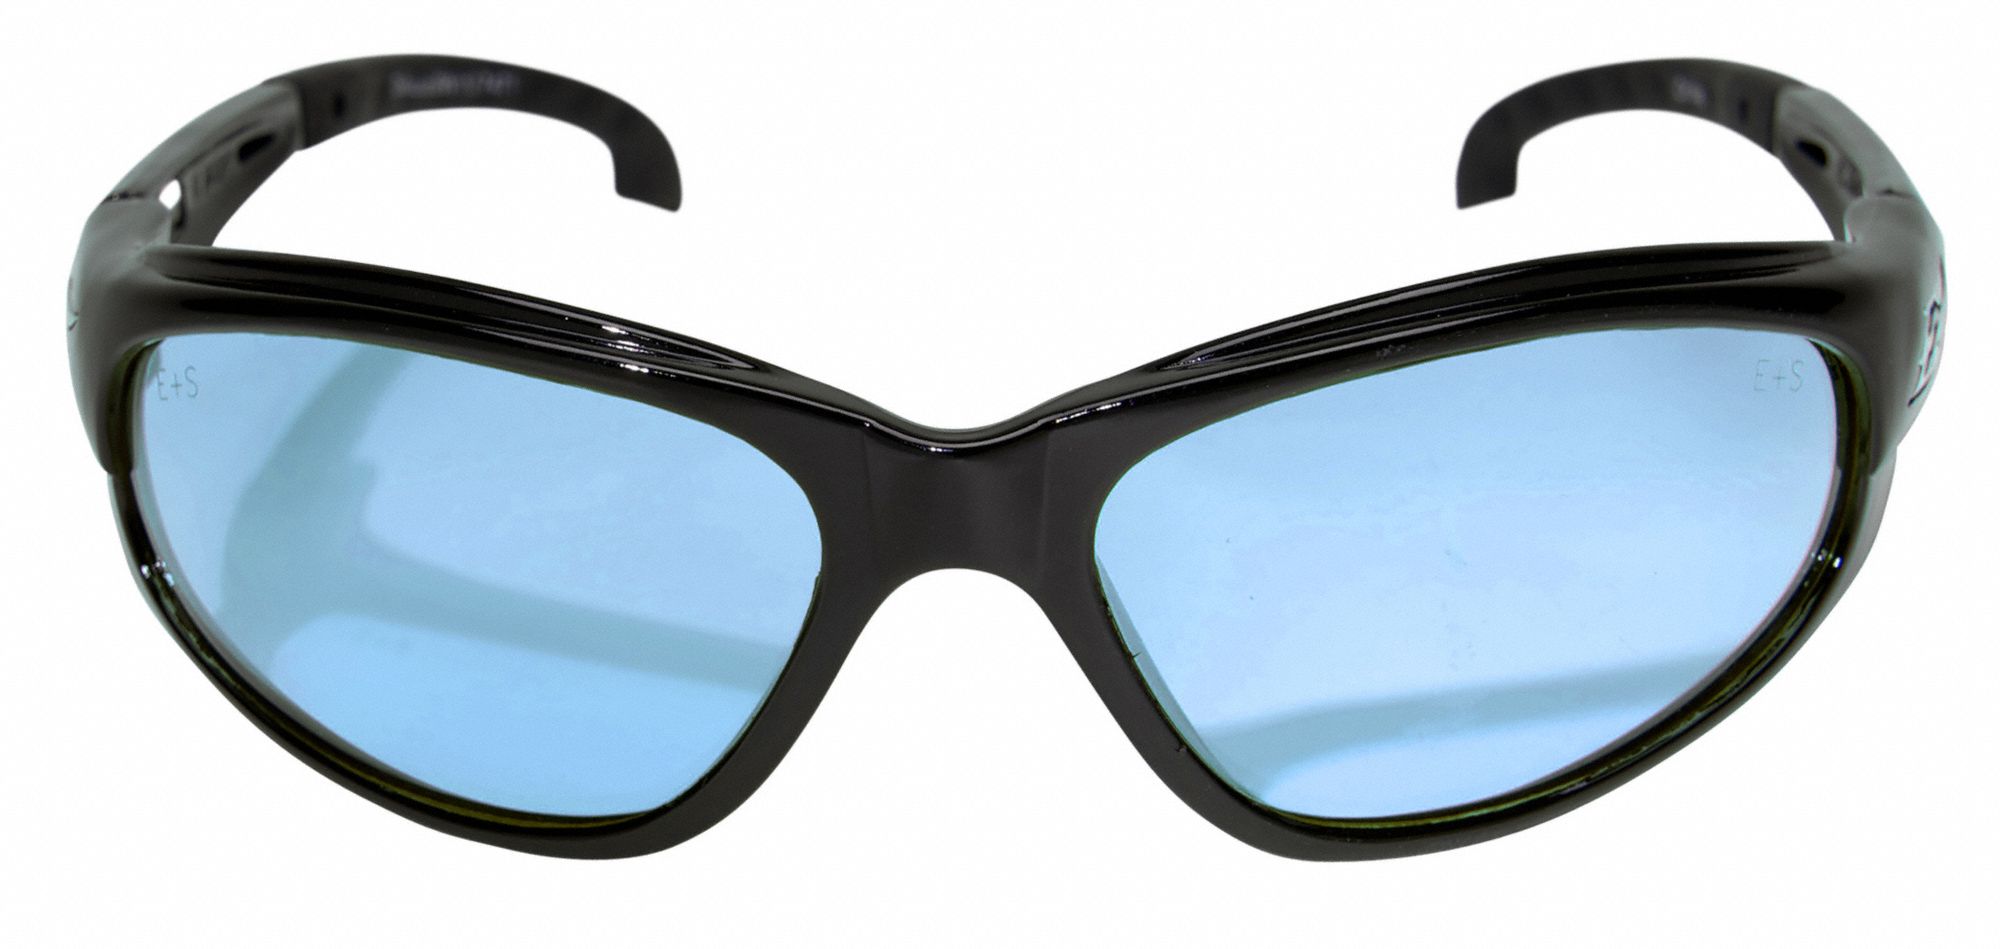 Edge Eyewear Safety Glasses Light Blue 38nh40 Sw113vs Grainger Free 